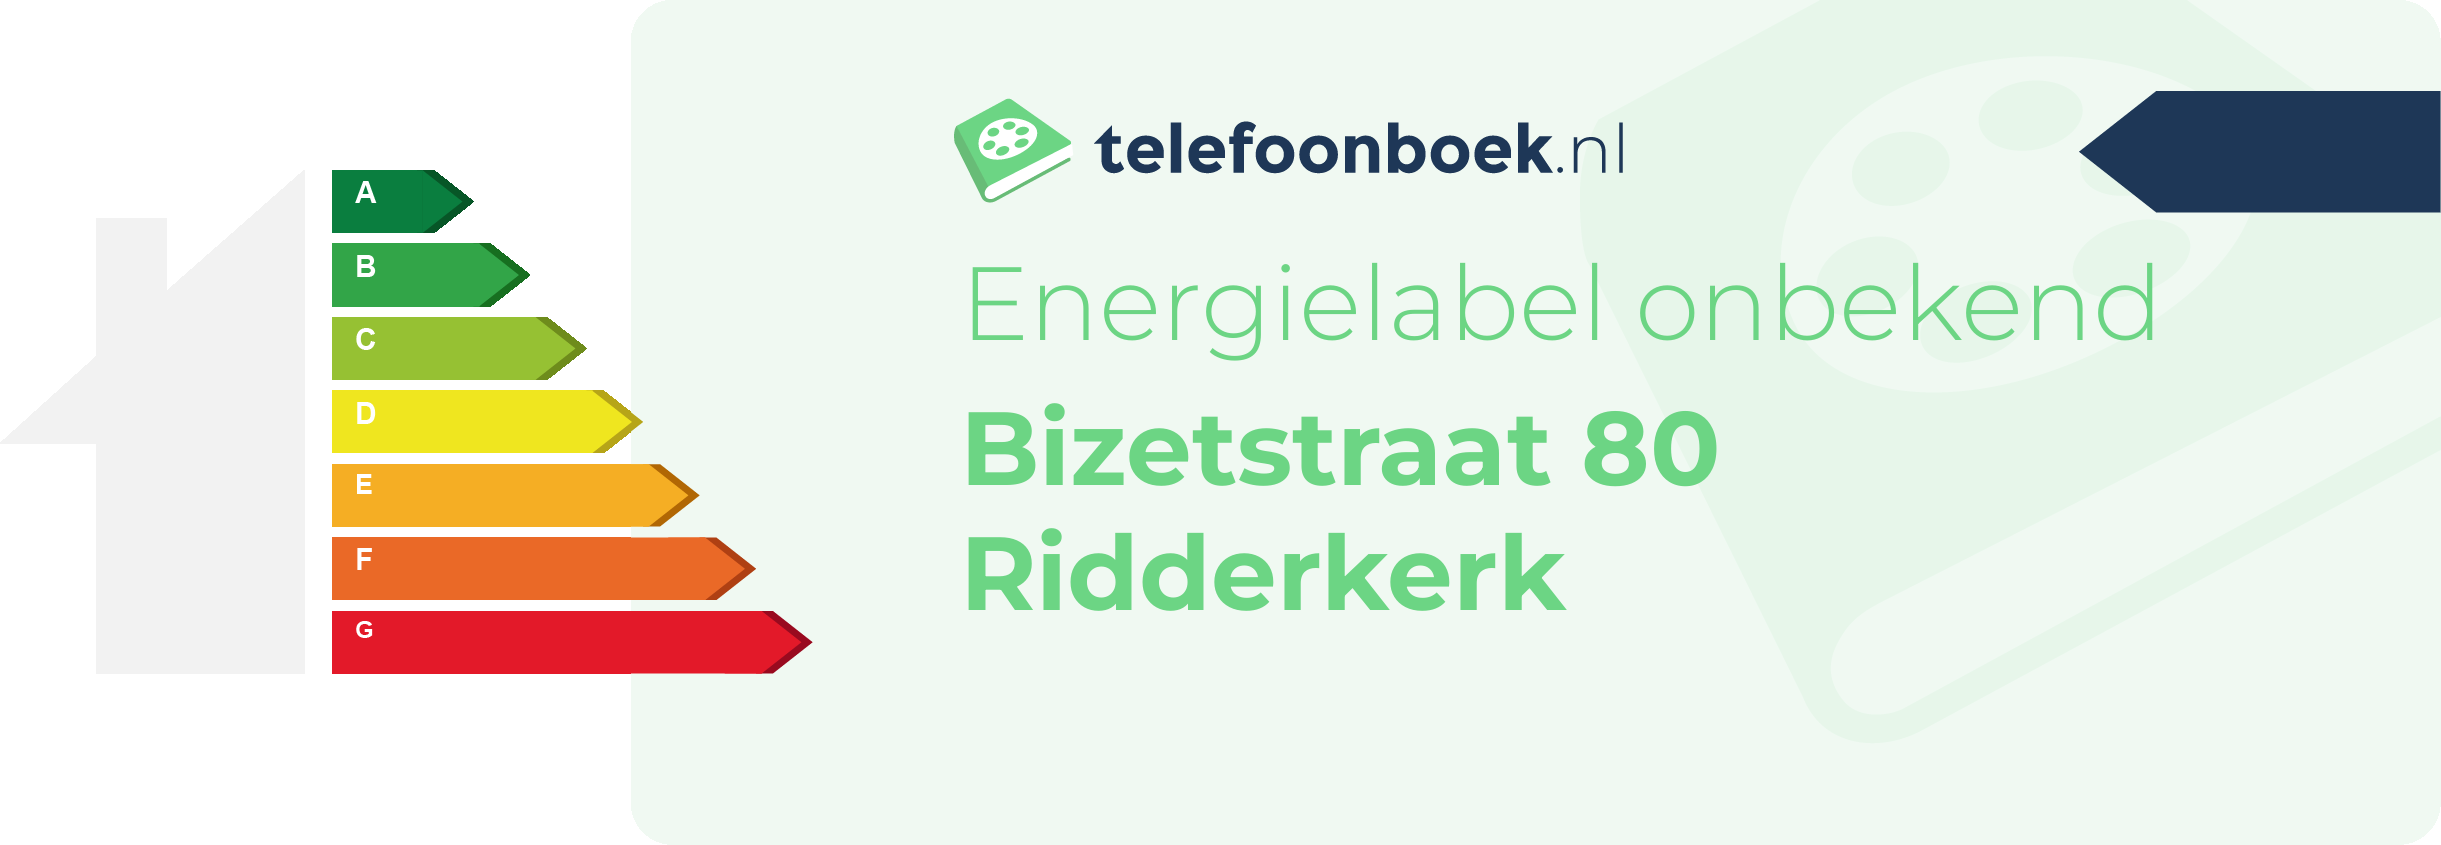 Energielabel Bizetstraat 80 Ridderkerk